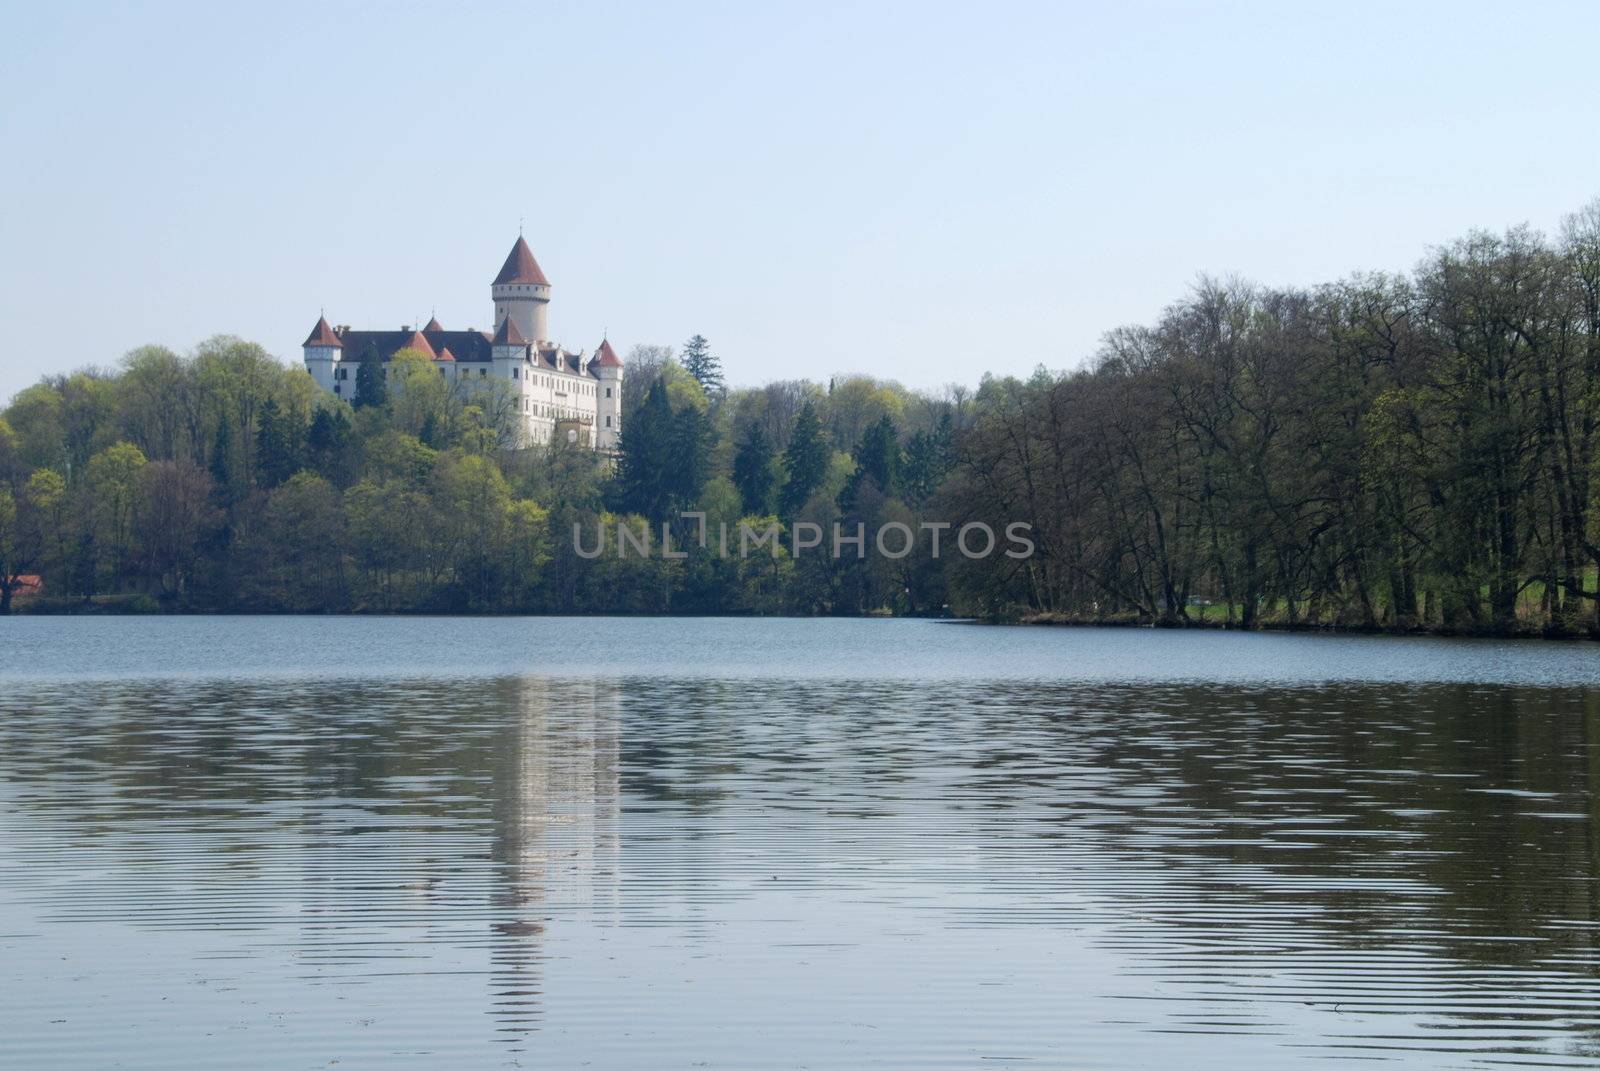 Beautiful castle Konopiste is reflecting in the pond, Czech Republic